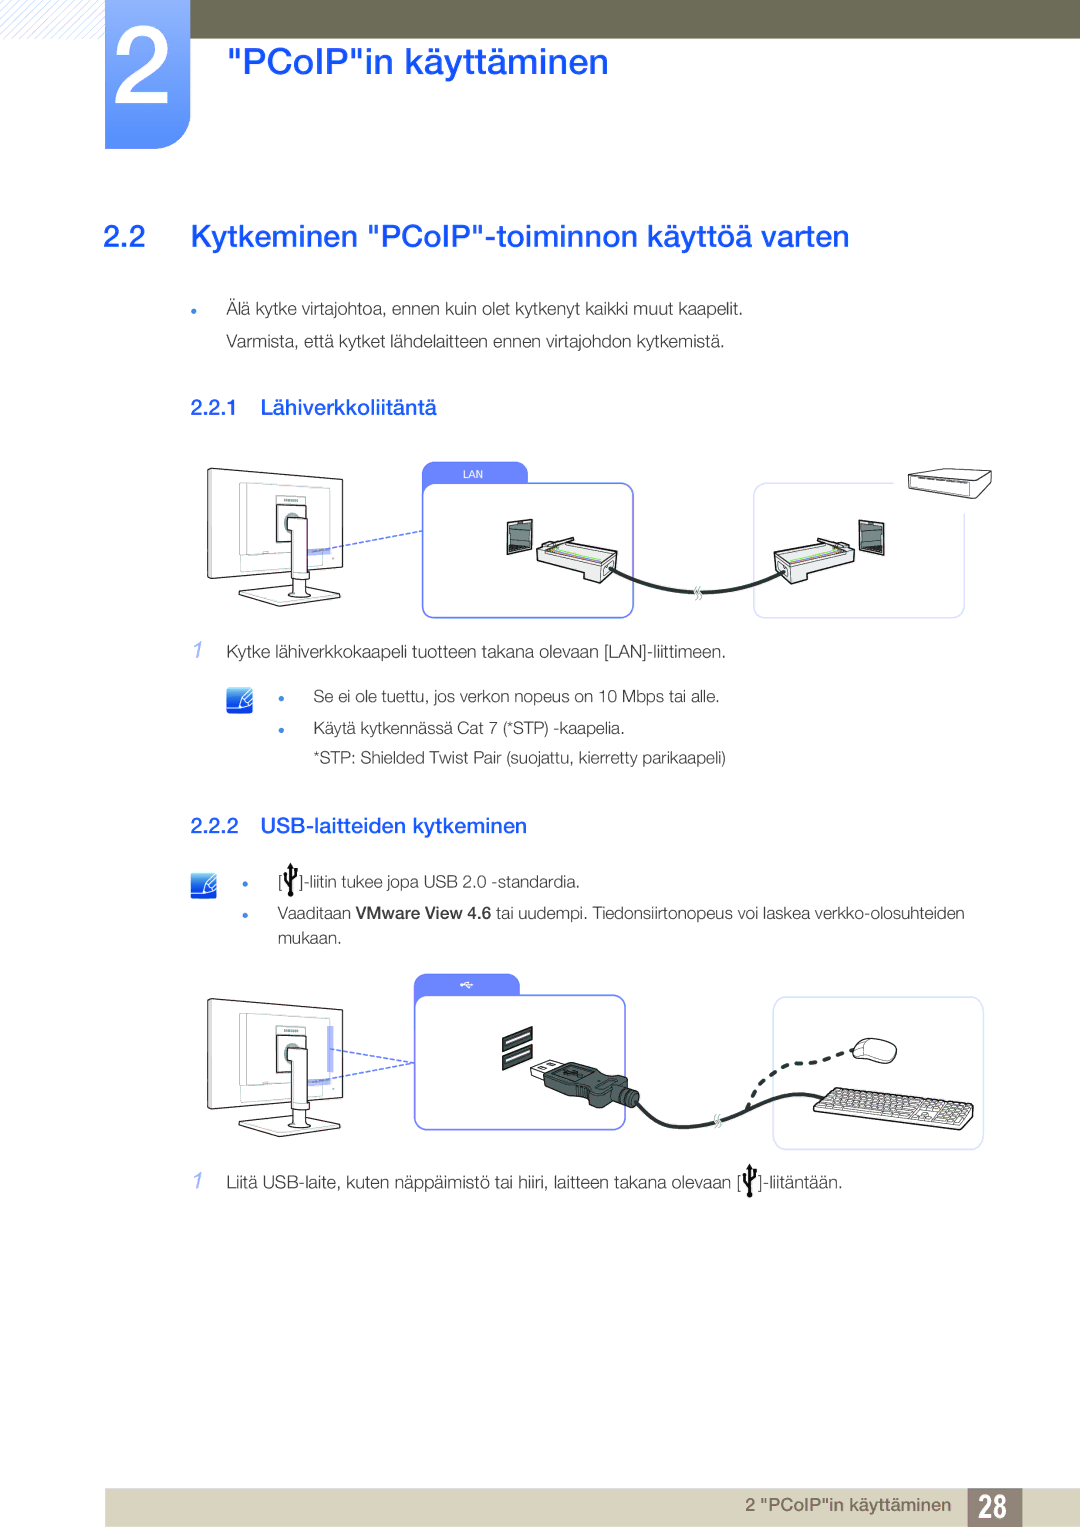 Samsung LF24NEBHBNU/EN manual Kytkeminen PCoIP-toiminnon käyttöä varten, 1 Lähiverkkoliitäntä, USB-laitteiden kytkeminen 